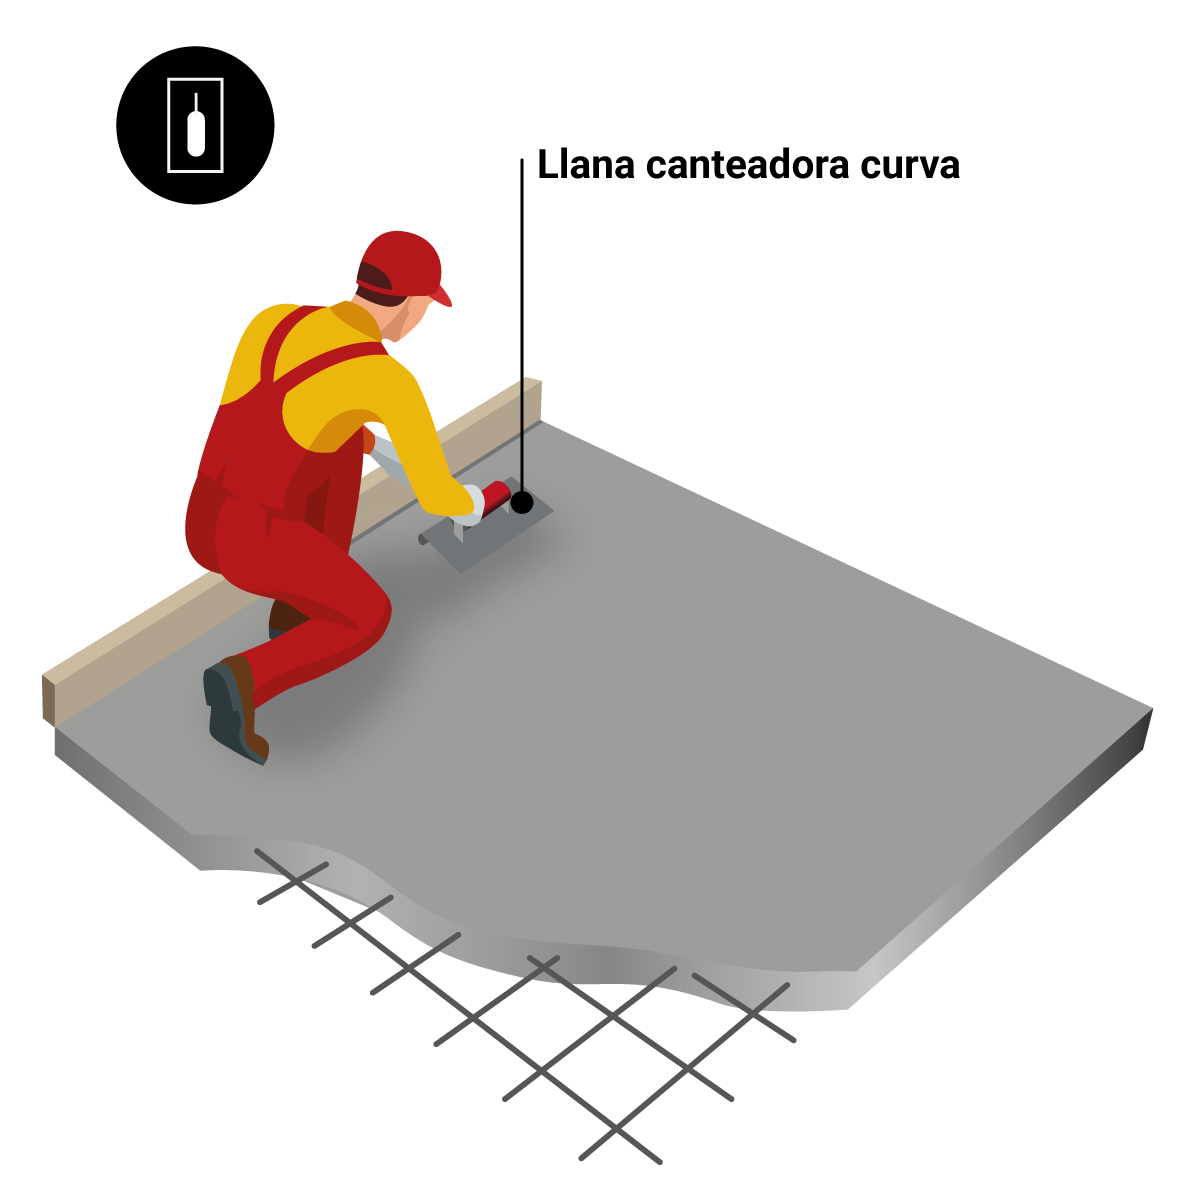 8. lépés: lenyomatott beton alkalmazása a padlón